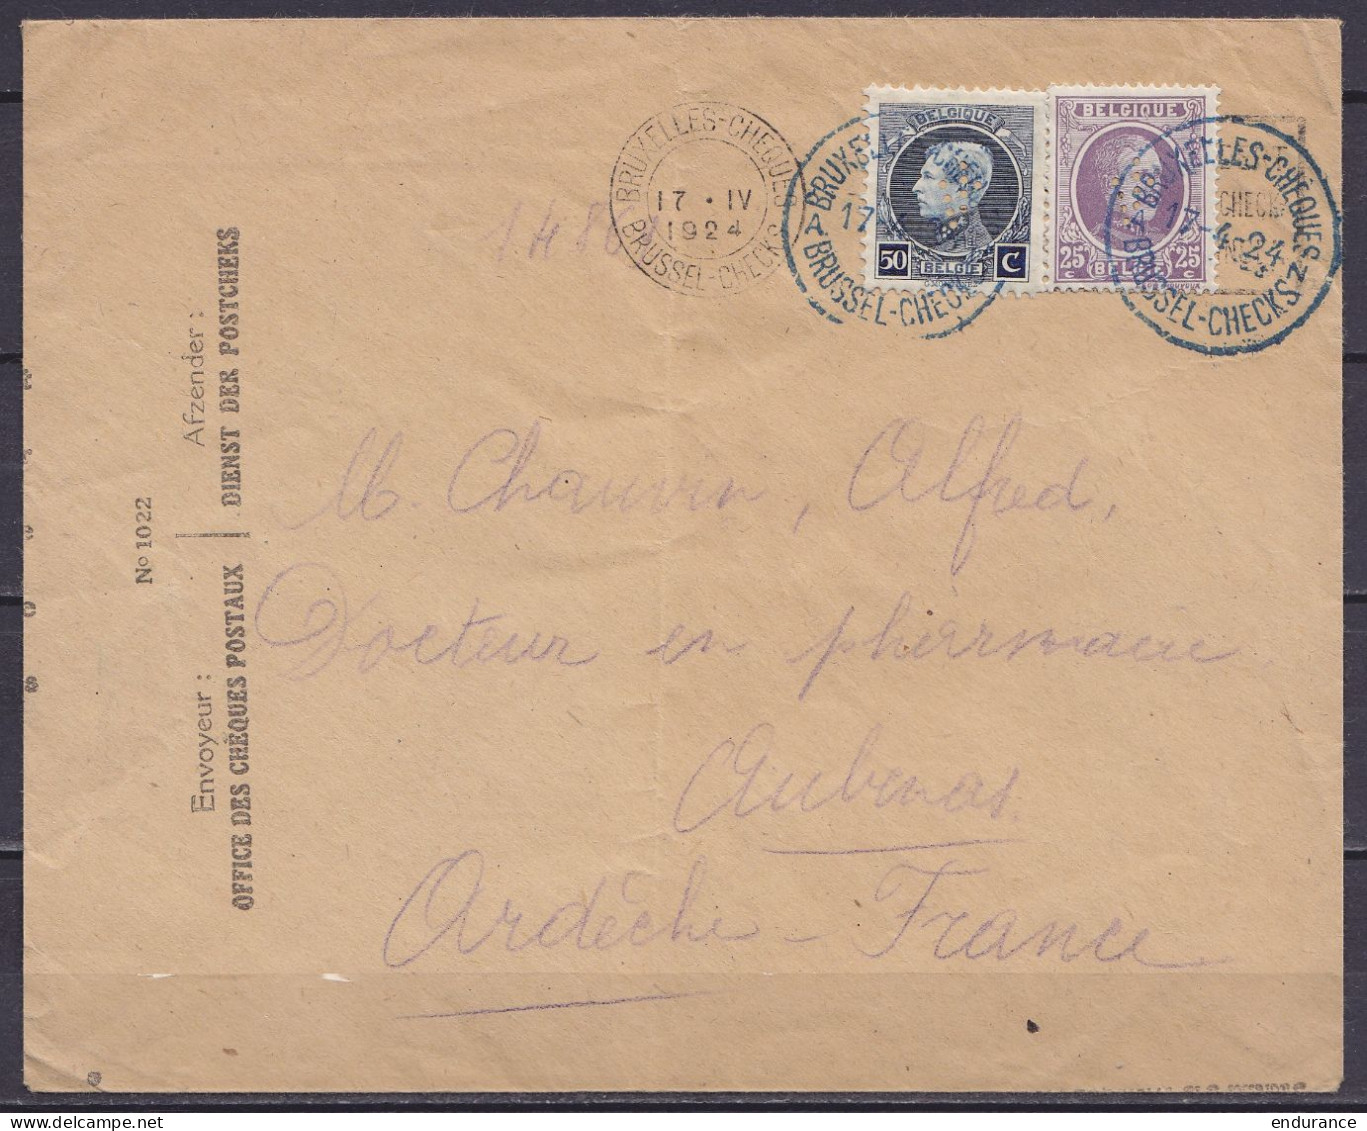 L. Office Des Chèques Postaux Affr. N°211+197 (sur Flam.) Càd Bleu "BRUXELLES-CHEQUES AN /17-4-1924/ BRUSSEL-CHECKS" Pou - 1921-1925 Small Montenez